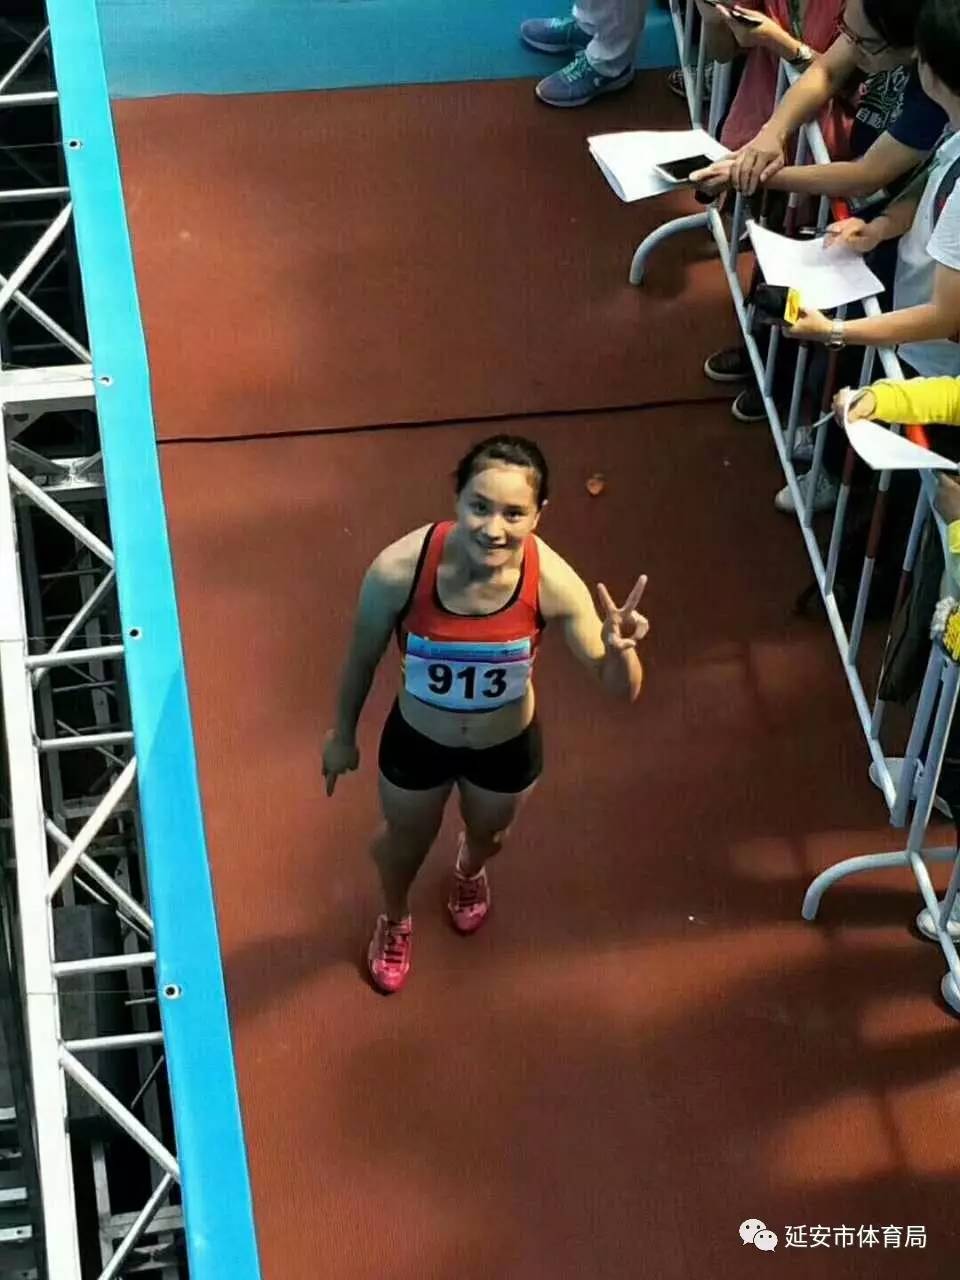 全运战报|延安 冯璐璐以11秒80成功晋级全运会女子100米复赛